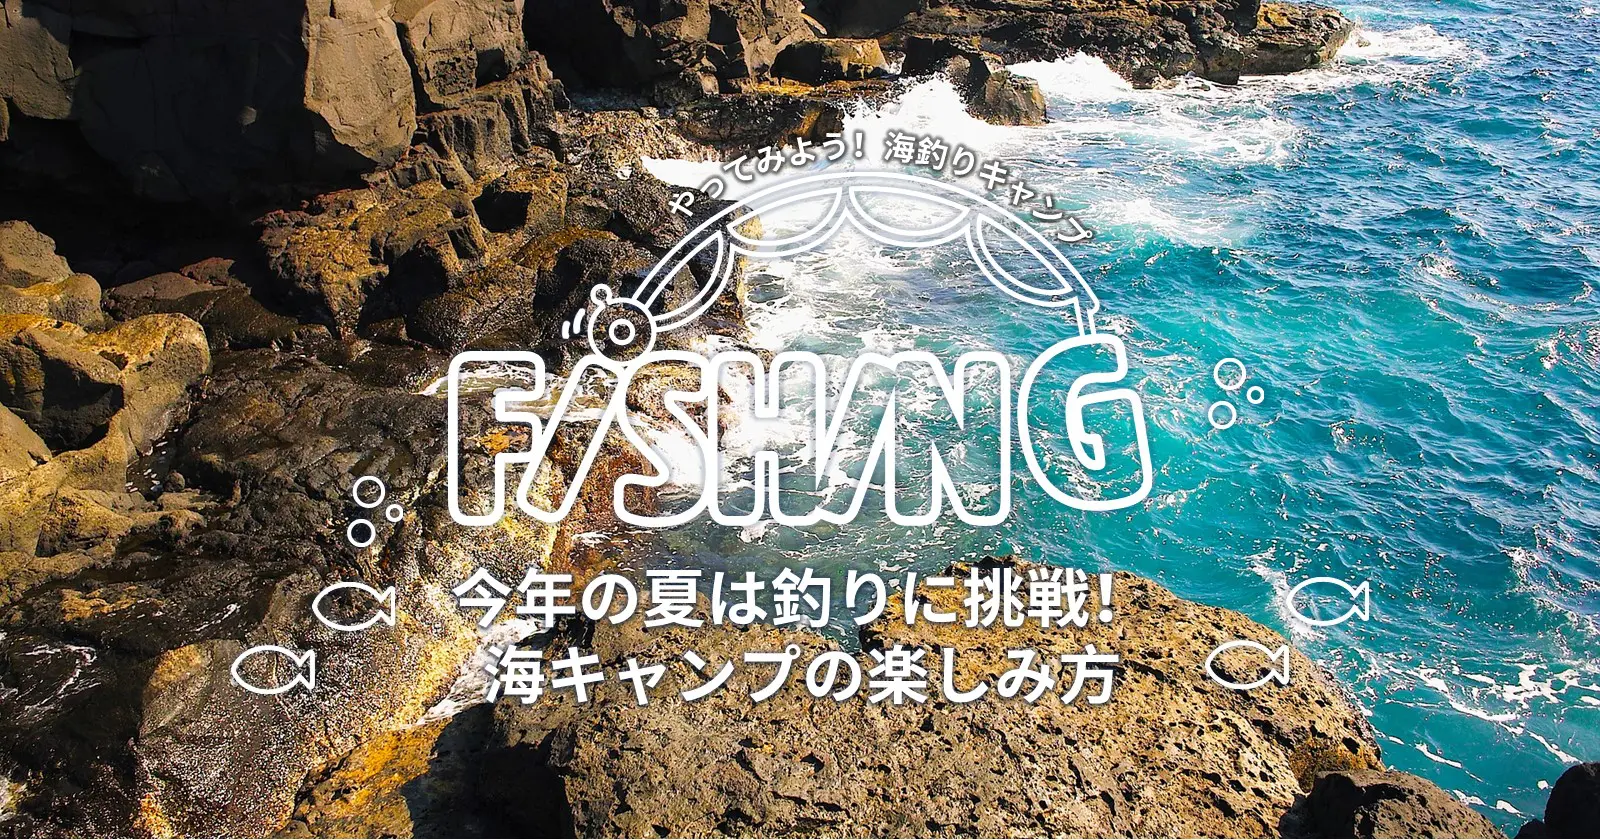 今年の夏は釣りに挑戦 海キャンプの楽しみ方 Takibi タキビ キャンプ アウトドアの総合情報サイト